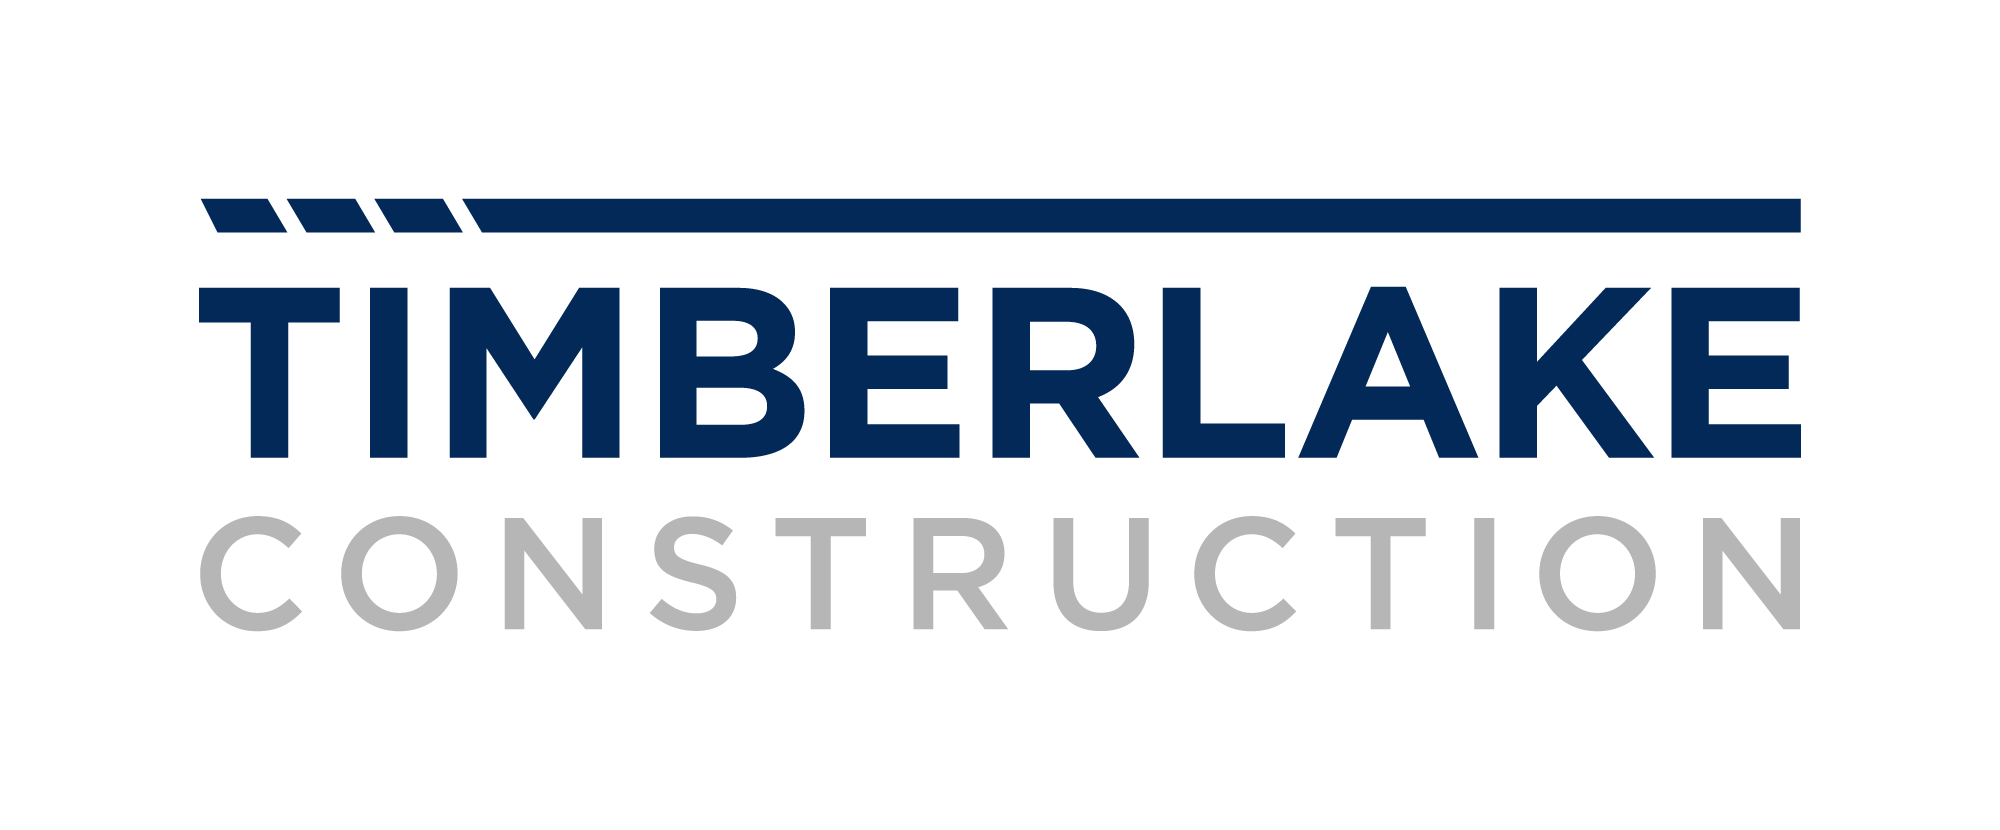 Timberlake Construction Company Logo